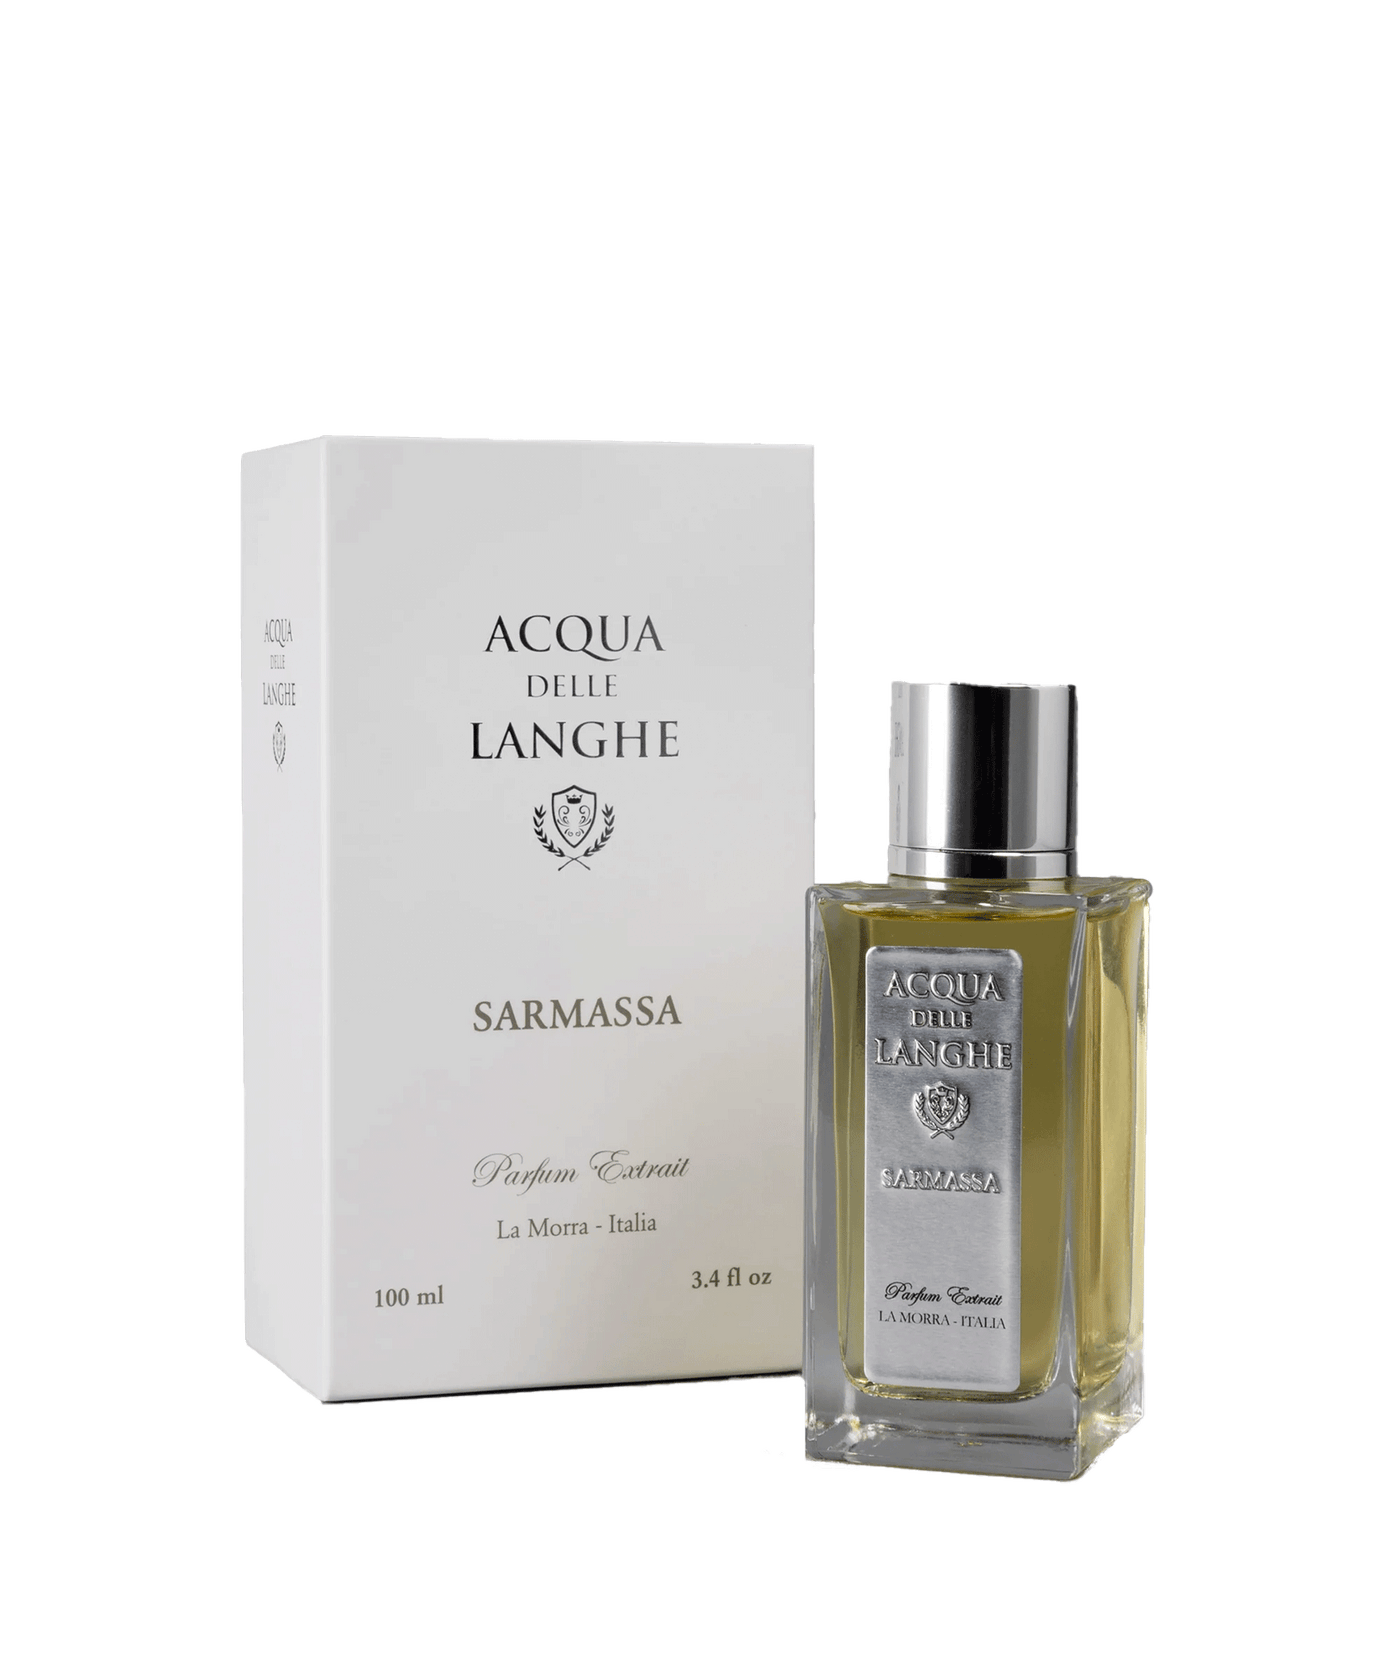 ACQUA DELLE LANGHE - Sarmassa - Parfum Extrait - 100ml